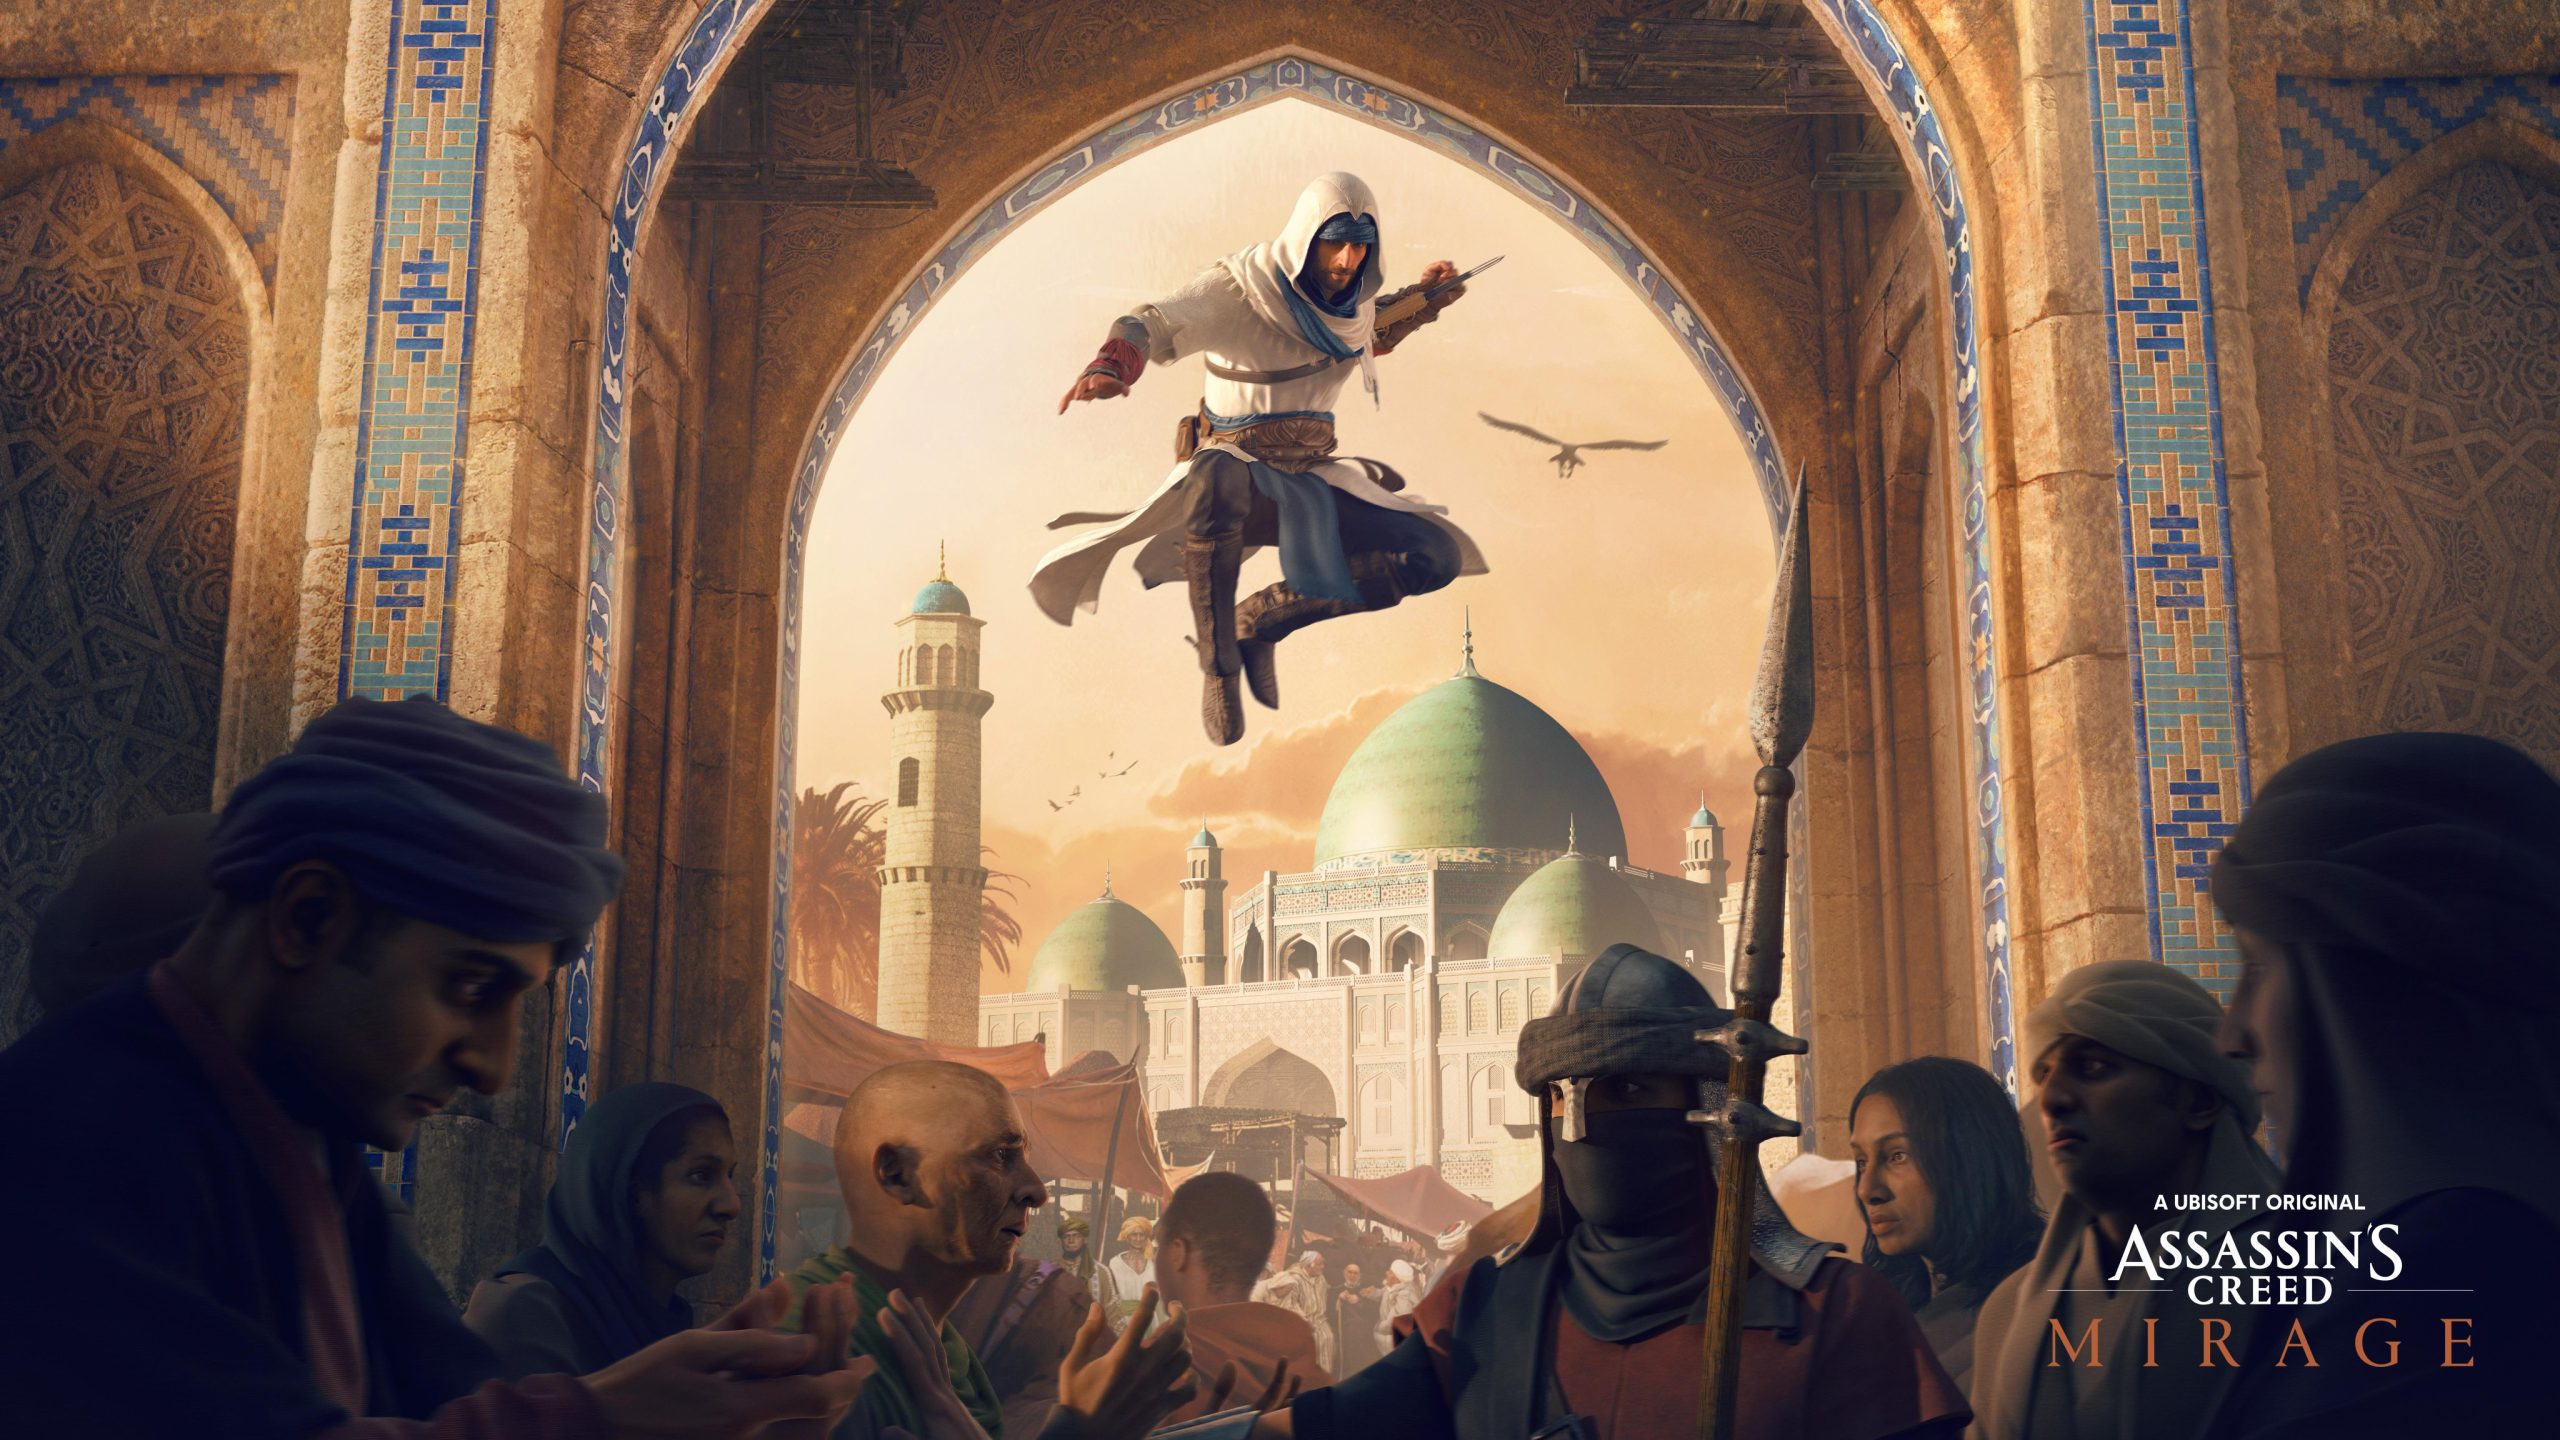 ยืนยันแล้ว! เกมภาคต่อไปในแฟรนไชส์ Assassin's Creed มาในชื่อ Assassin's Creed Mirage